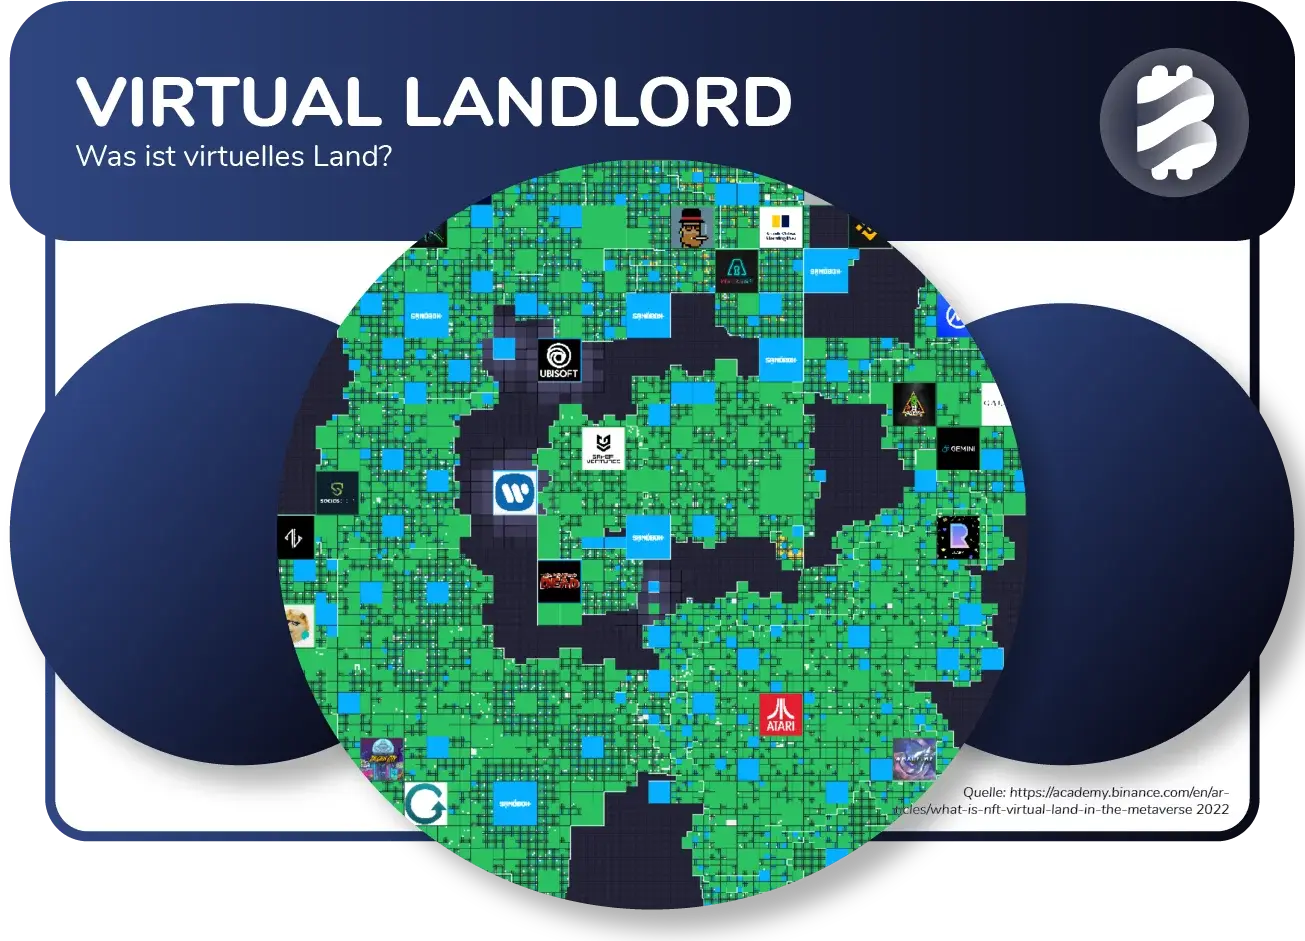 Grafik zu virtuellem Land von Sandbox, aufgeteilt in Parzellen